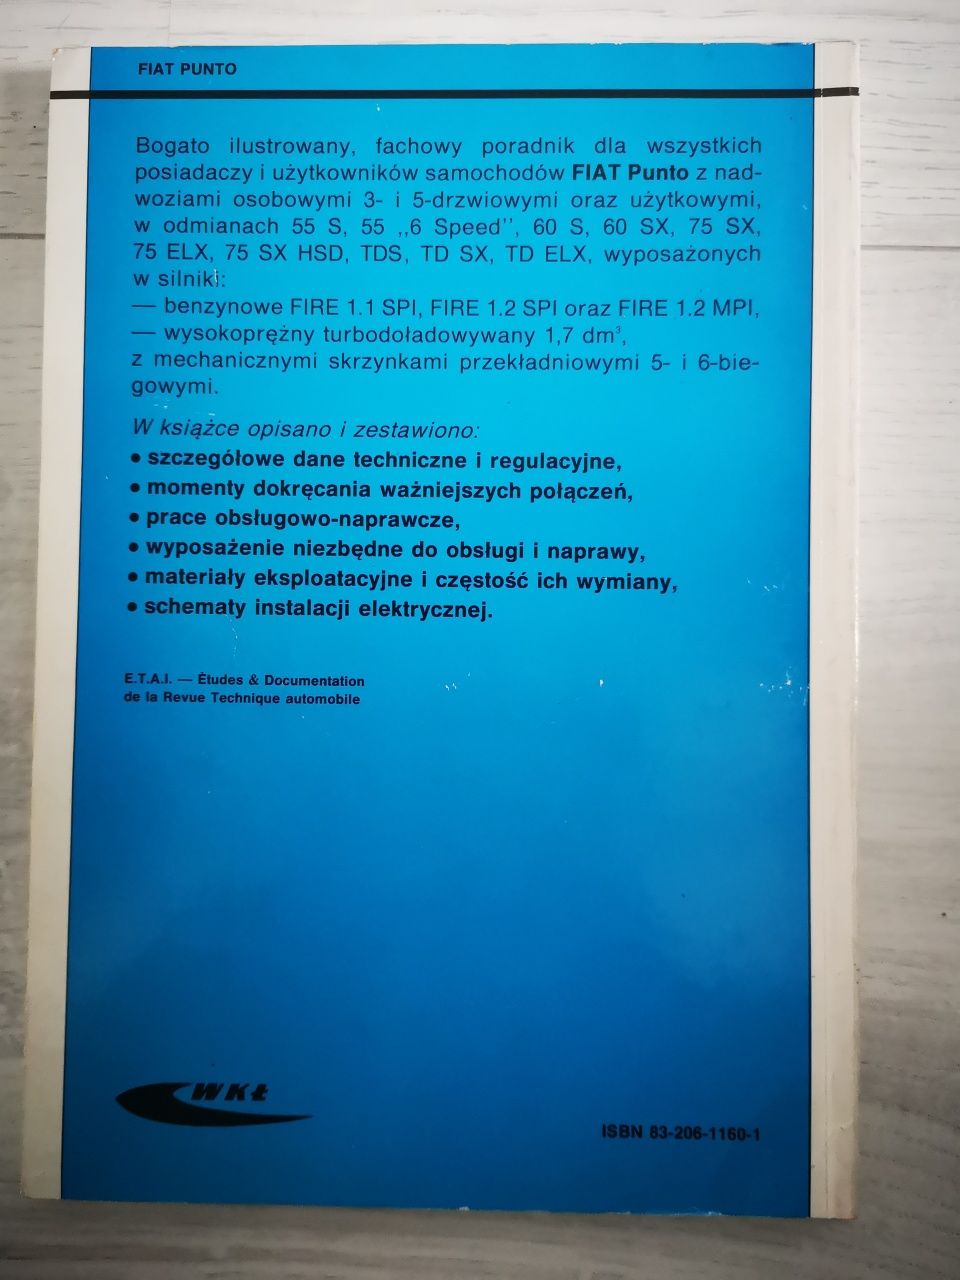 Instrukcja obsługi, Poradnik FIAT PUNTO, wydanie z roku 1995